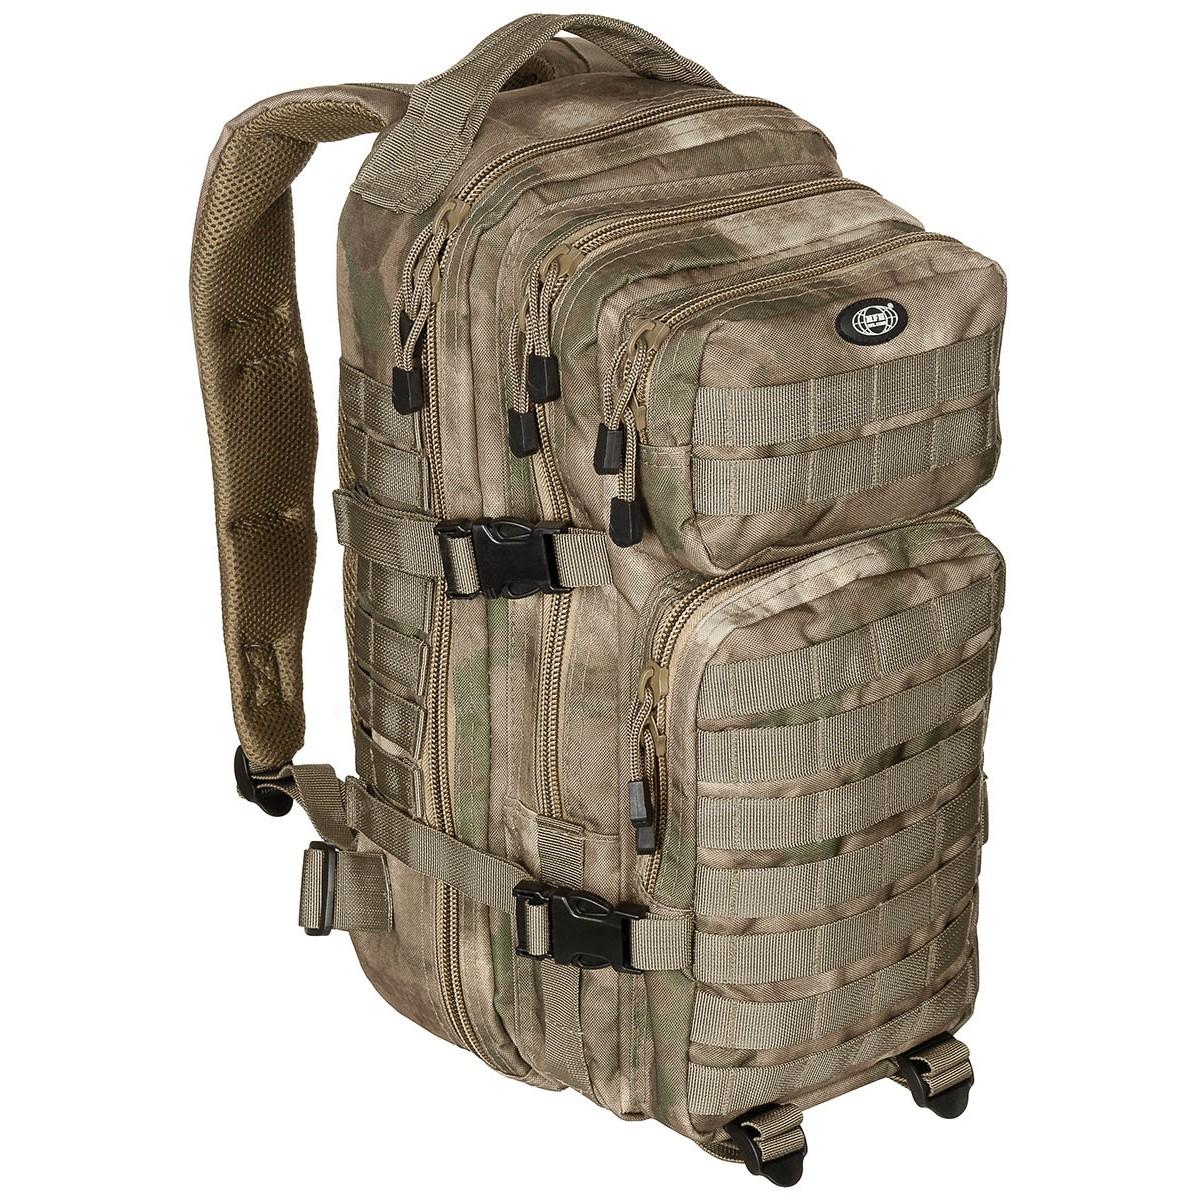 Тактический рюкзак US Assault I (30 литров), камуфляж Vegetato купить в интернет-магазине wht.ru